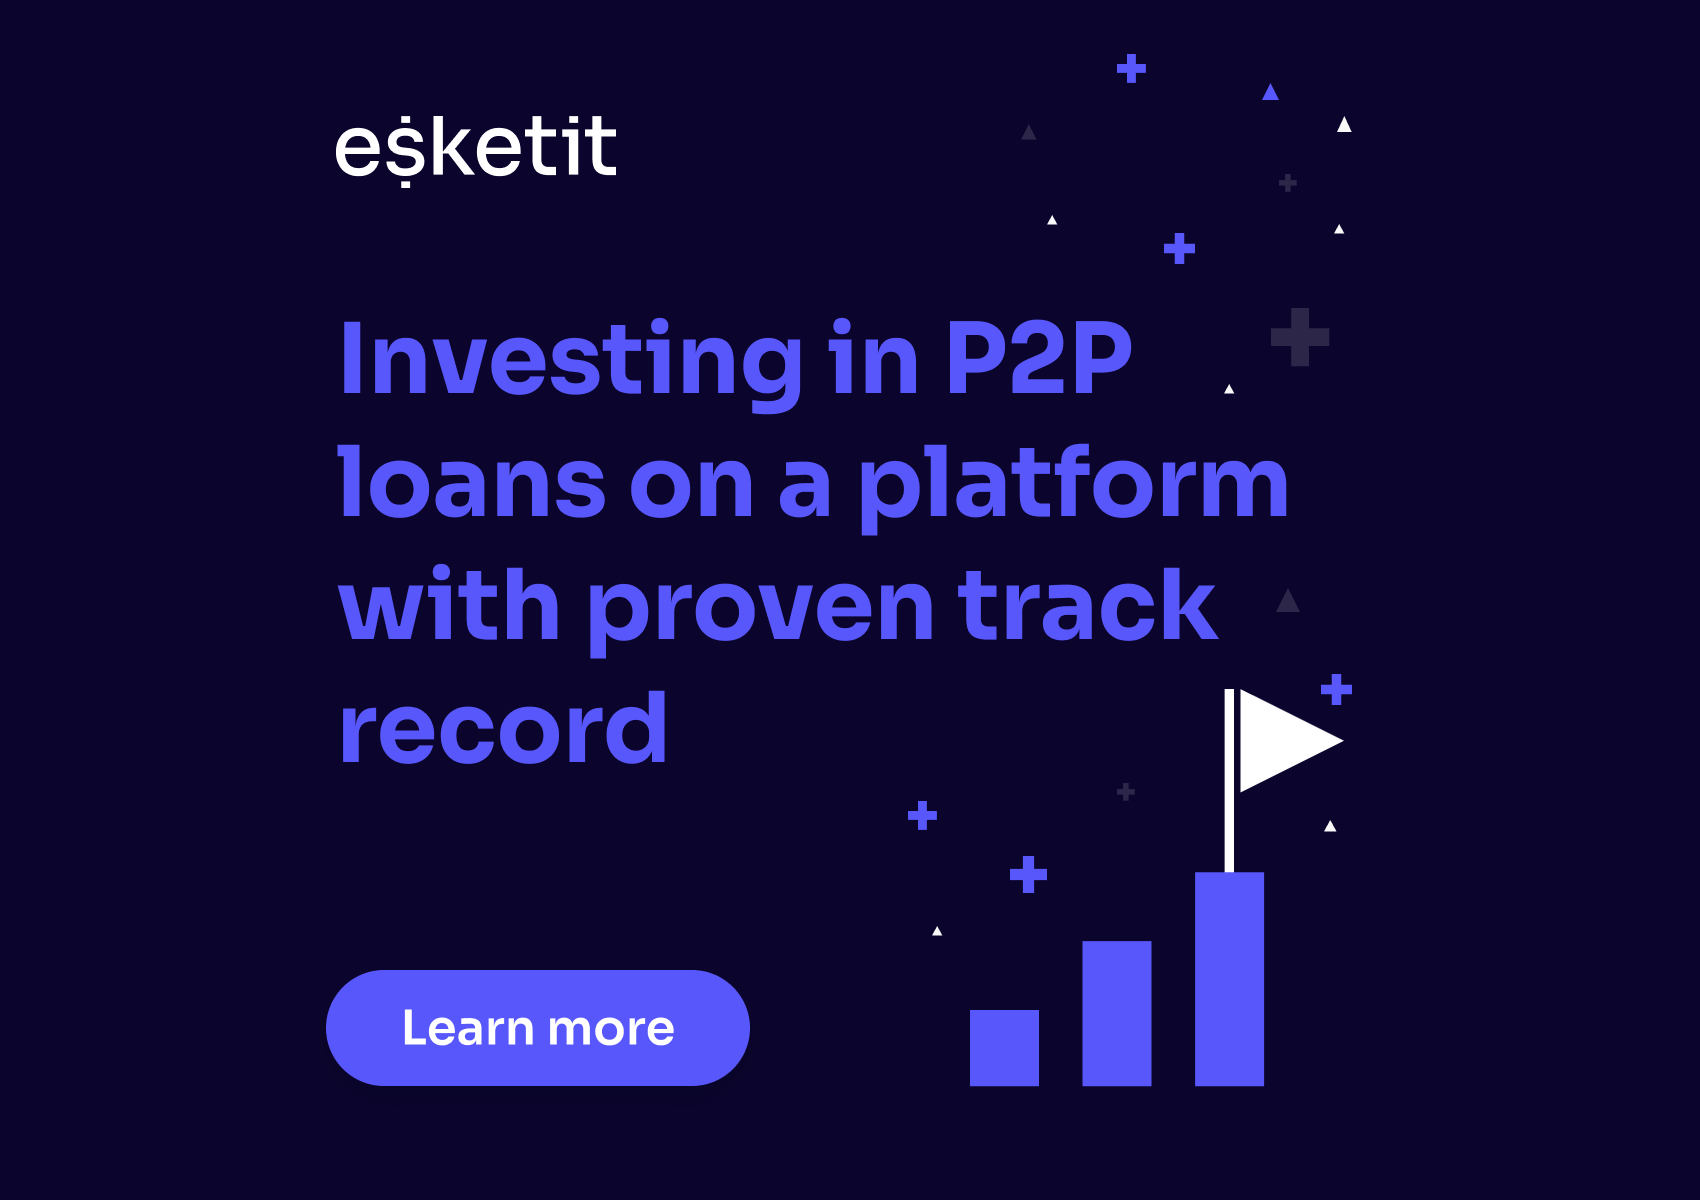 Esketit: recenze investiční P2P platformy s půjčkami od poskytovatele Creamfinance